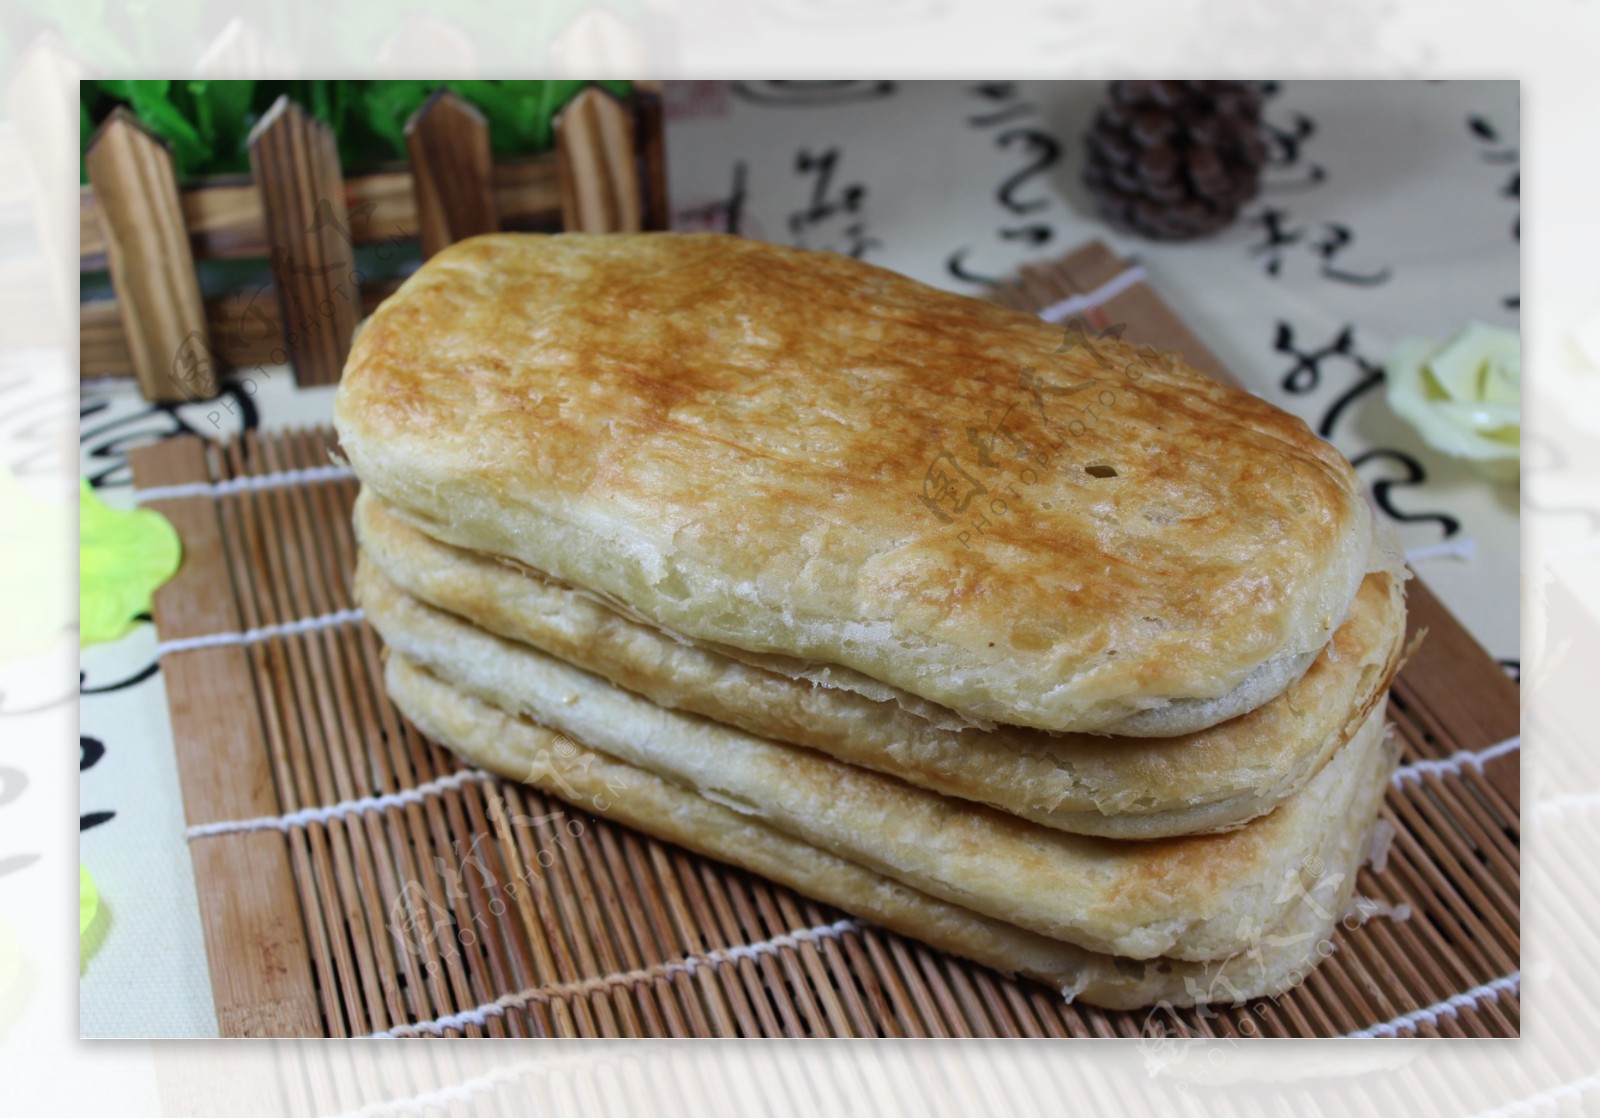 Bakeling - 万家灯火: 咸豆沙饼 - Salty Dao Sar Biscuit